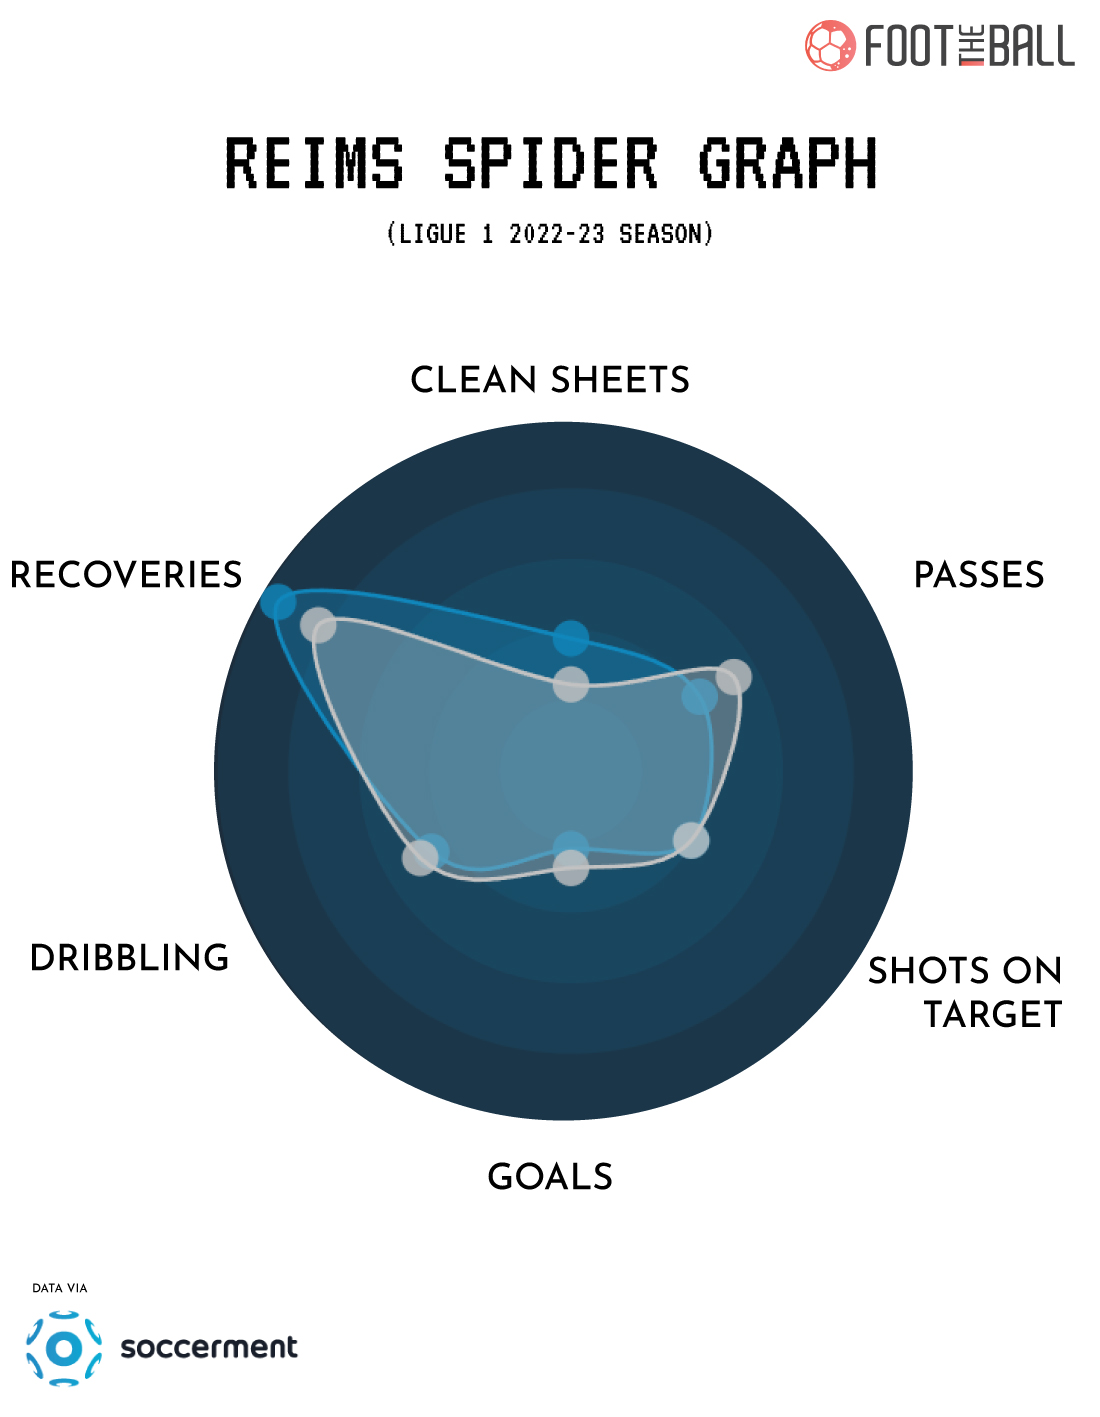 Reims 2022-23 Spider Graph